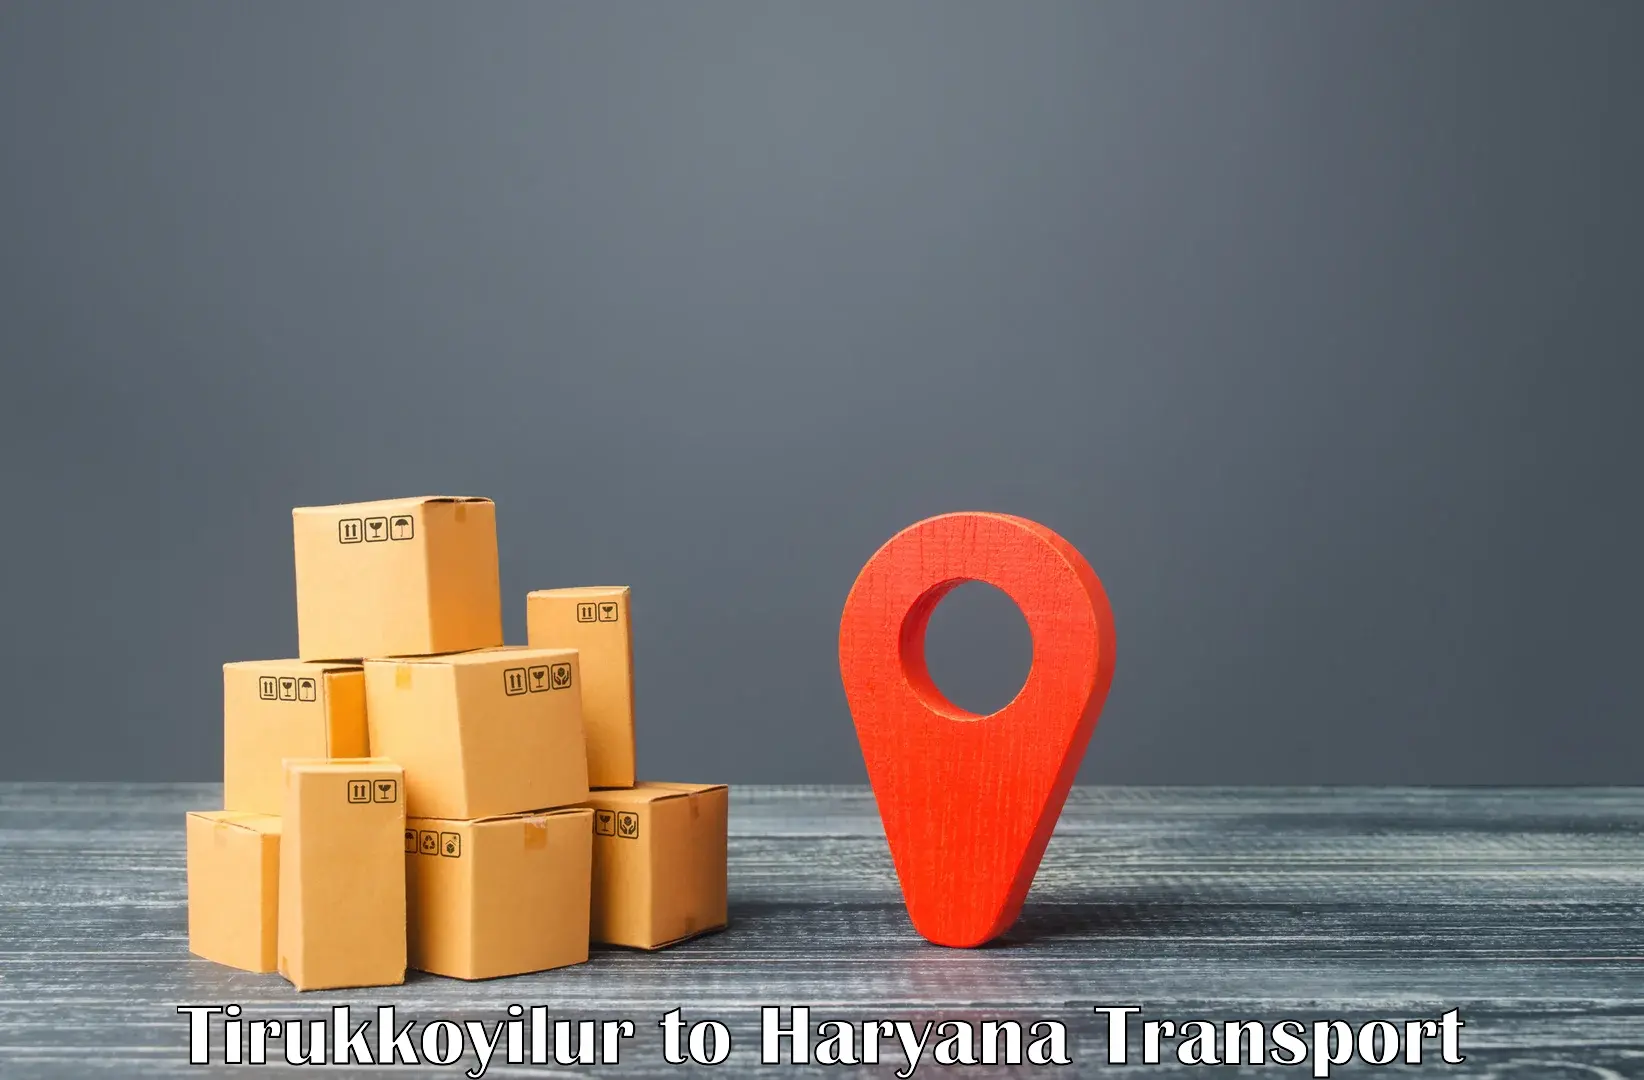 Cargo transportation services Tirukkoyilur to NCR Haryana